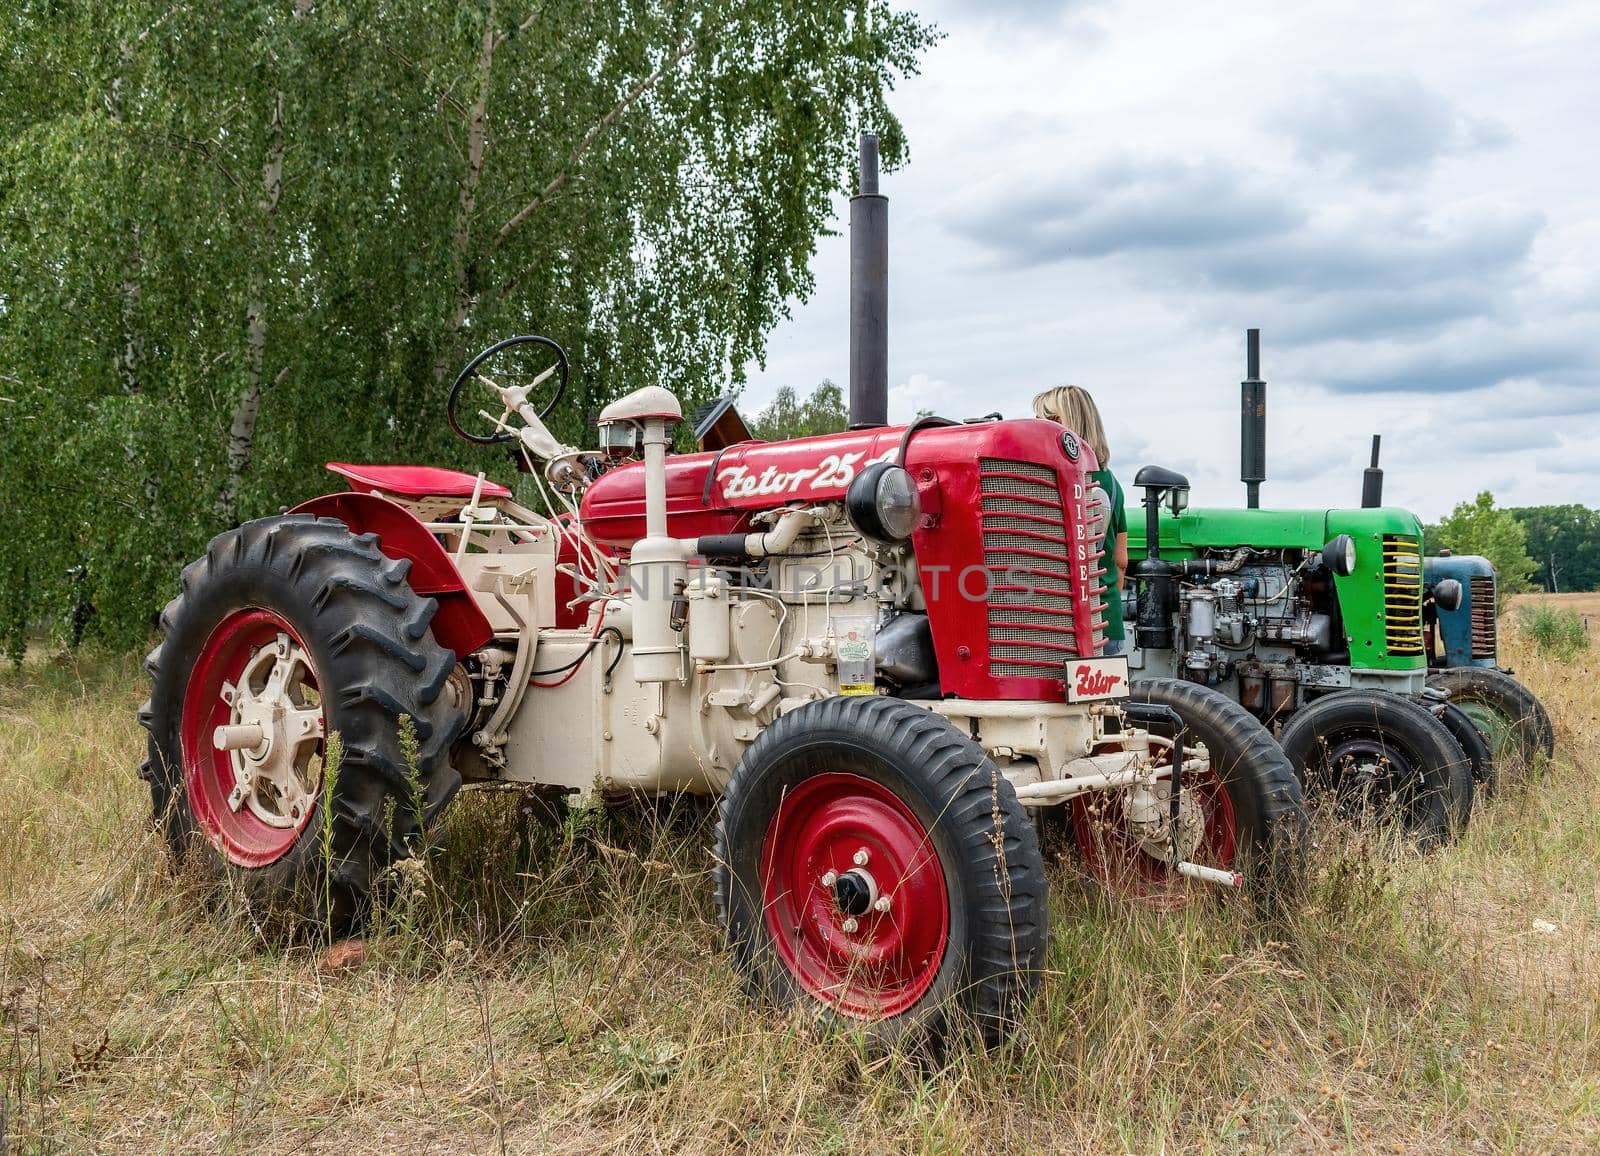 Zetor 25 tractor by rostik924